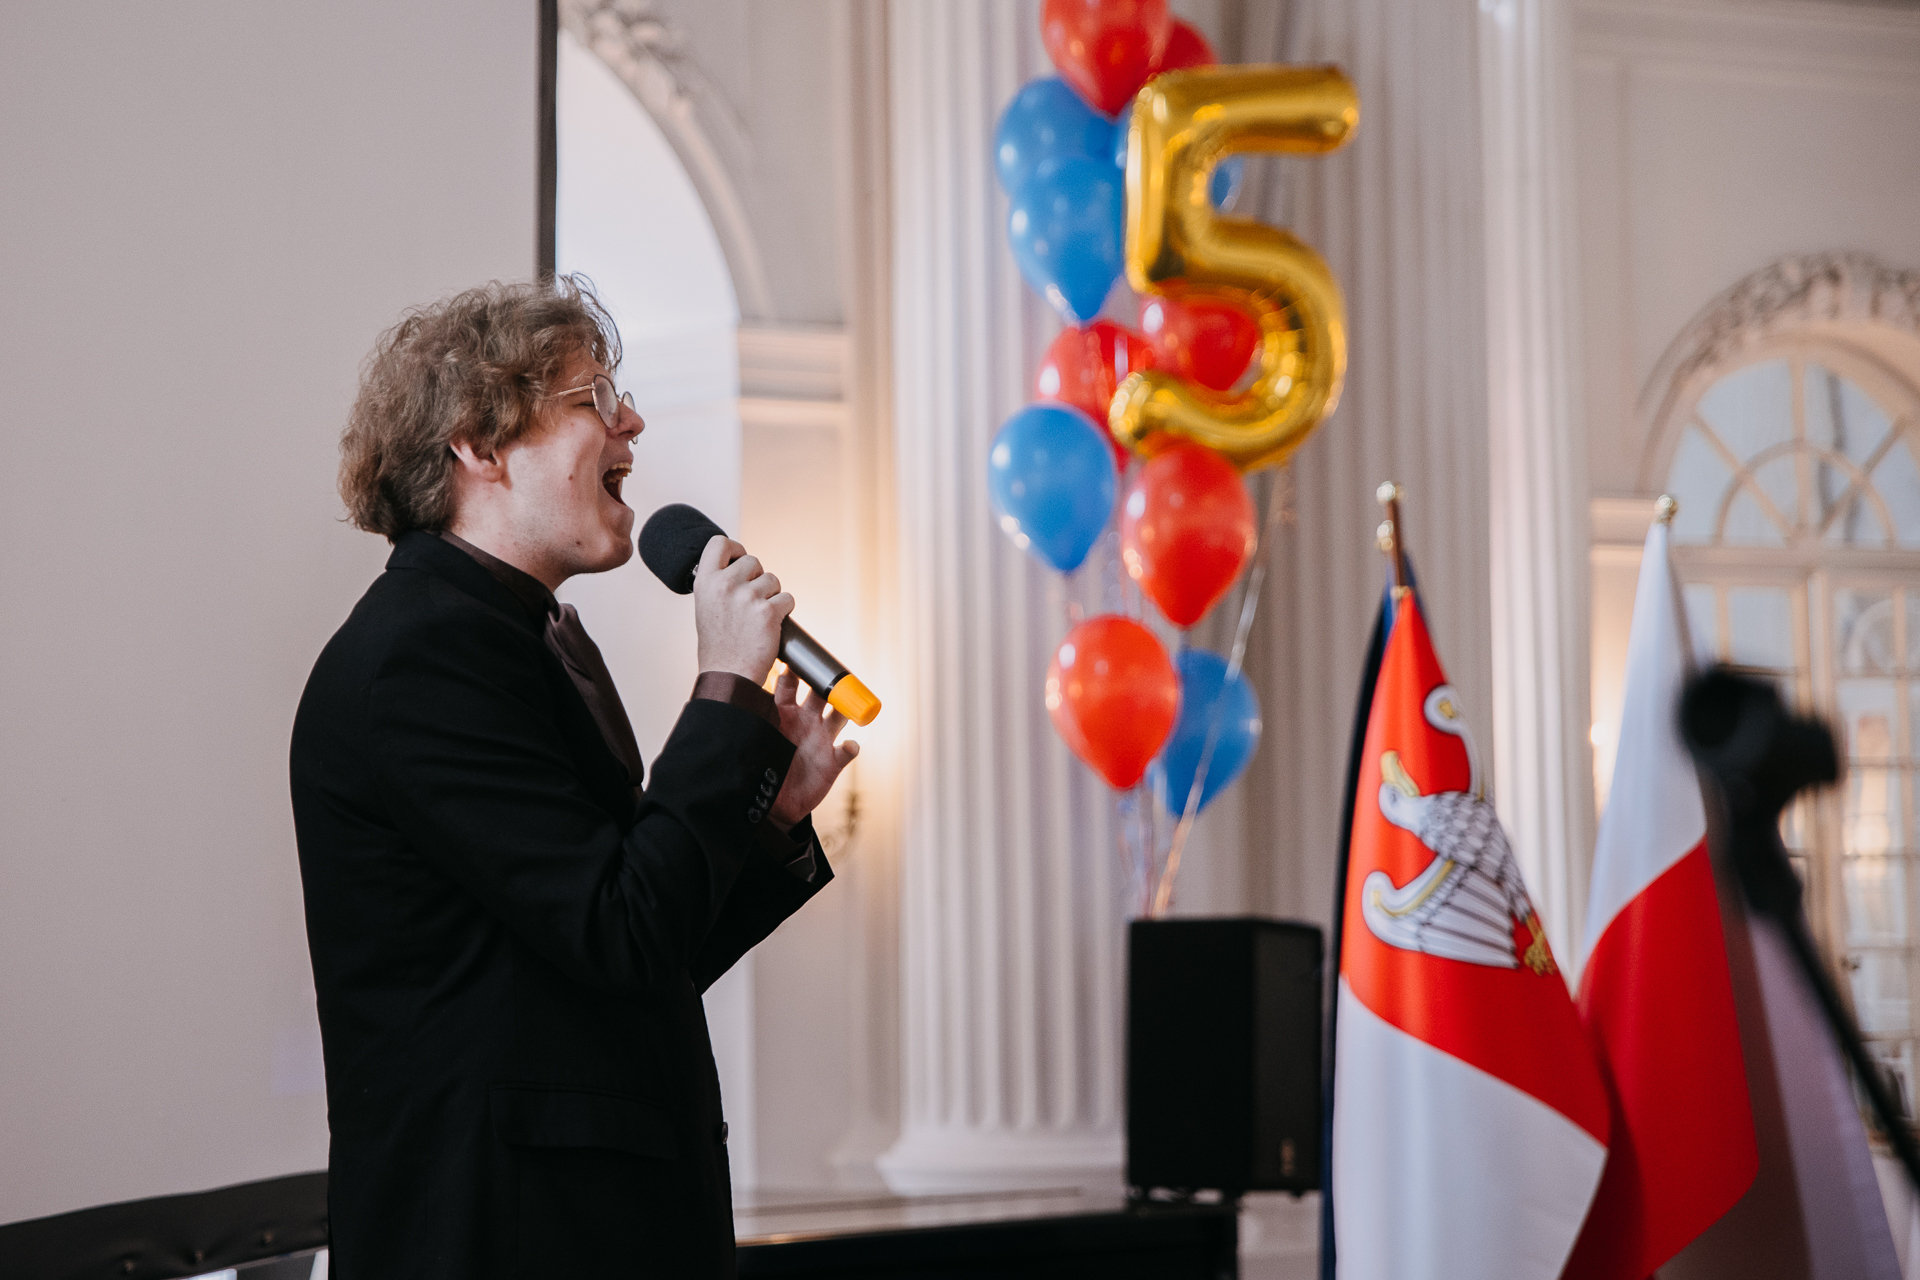 Na scenie młody chłopak, artysta, piosenkarz - Norbert Wronka - ubrany w czarny garnitur śpiewa do mikrofonu.